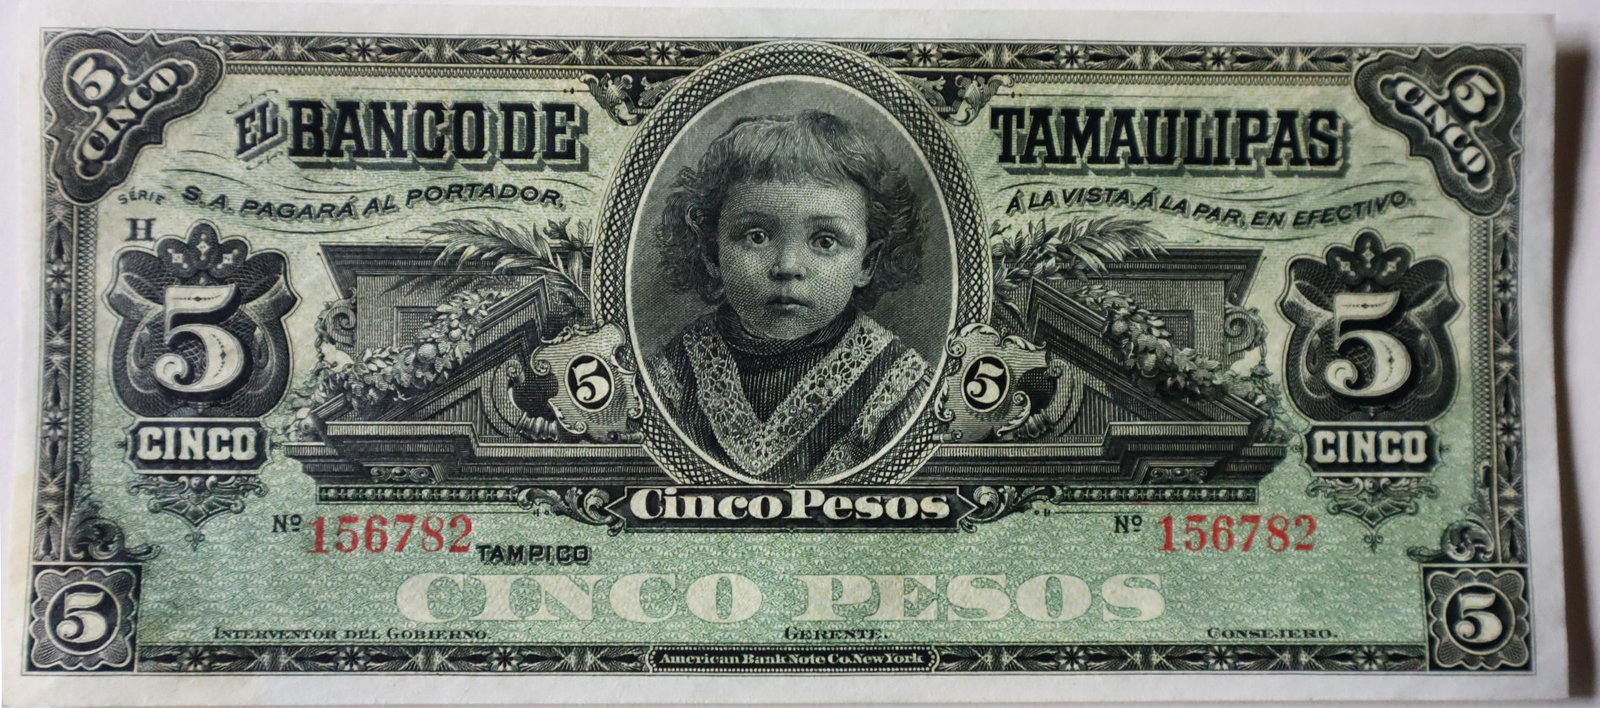 Billete 5 Pesos del Banco de Tamaulipas frontal